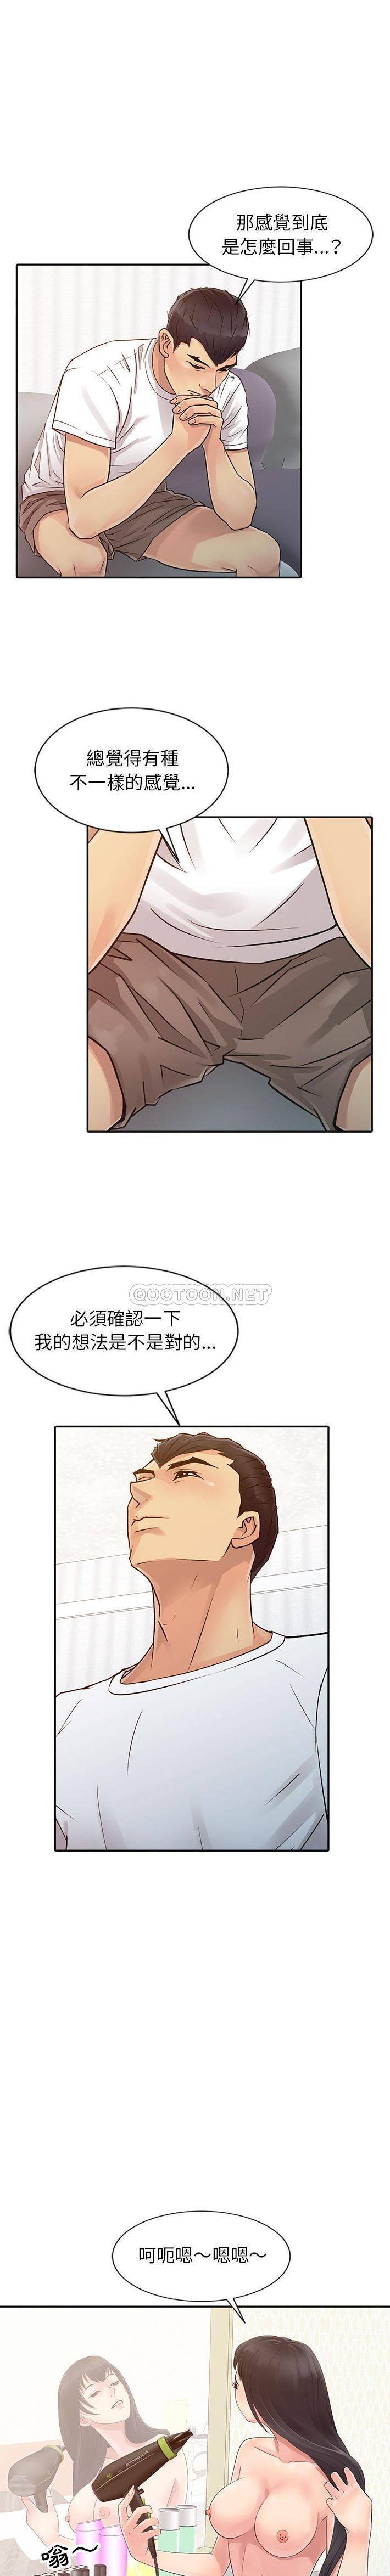 韩国污漫画 征服的滋味 第12话 3